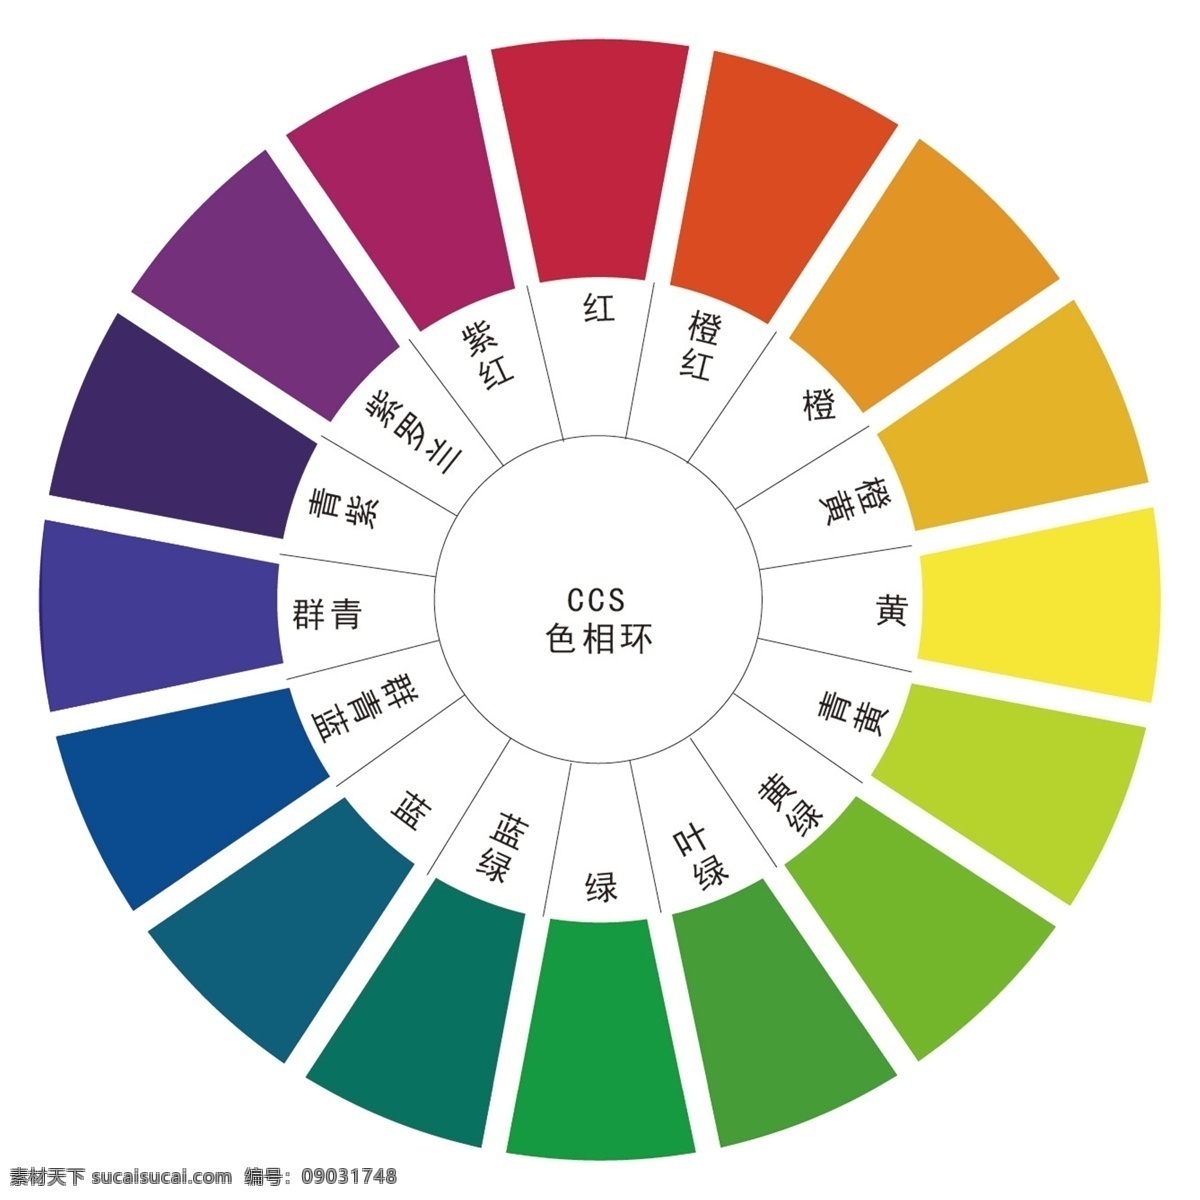 216种颜色 色相圆环 24色环 渐变色环 色彩构成 设计颜色 圆环 同心色相环 三基色 创意设计 彩色